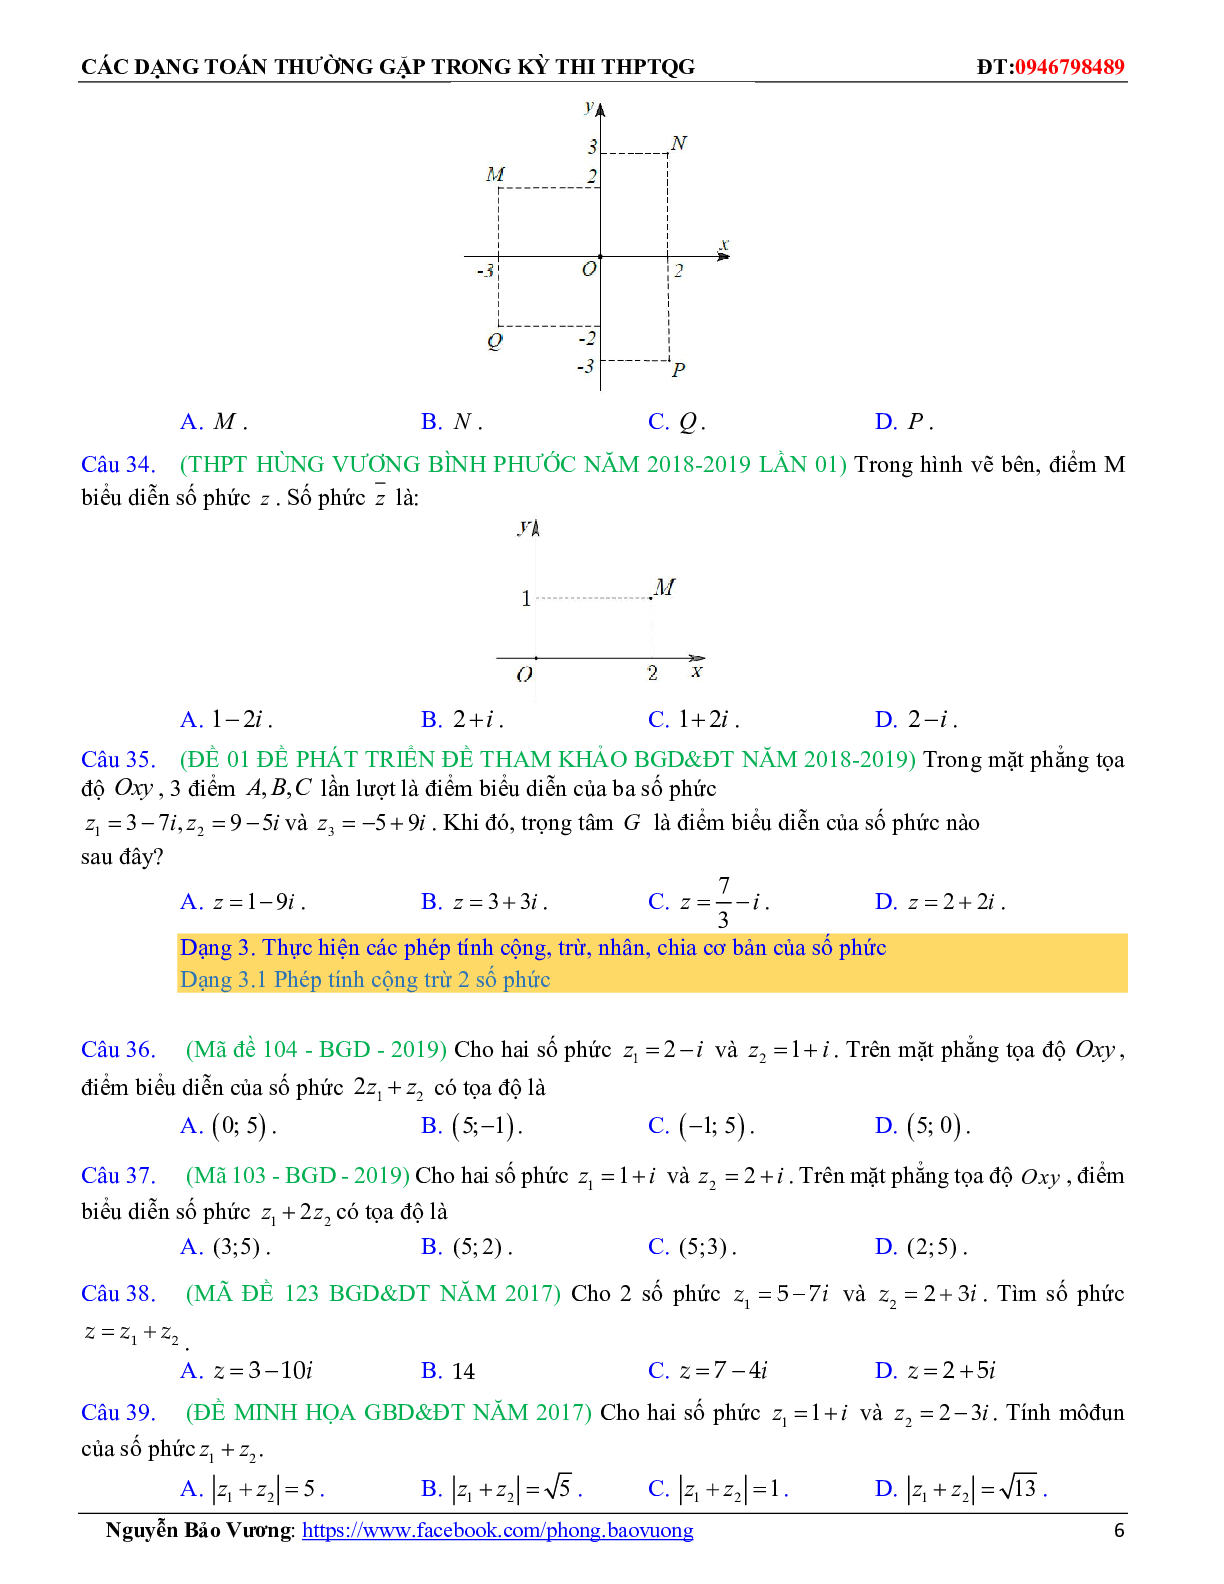 Các dạng toán về số phức thường gặp trong kỳ thi THPTQG (trang 6)